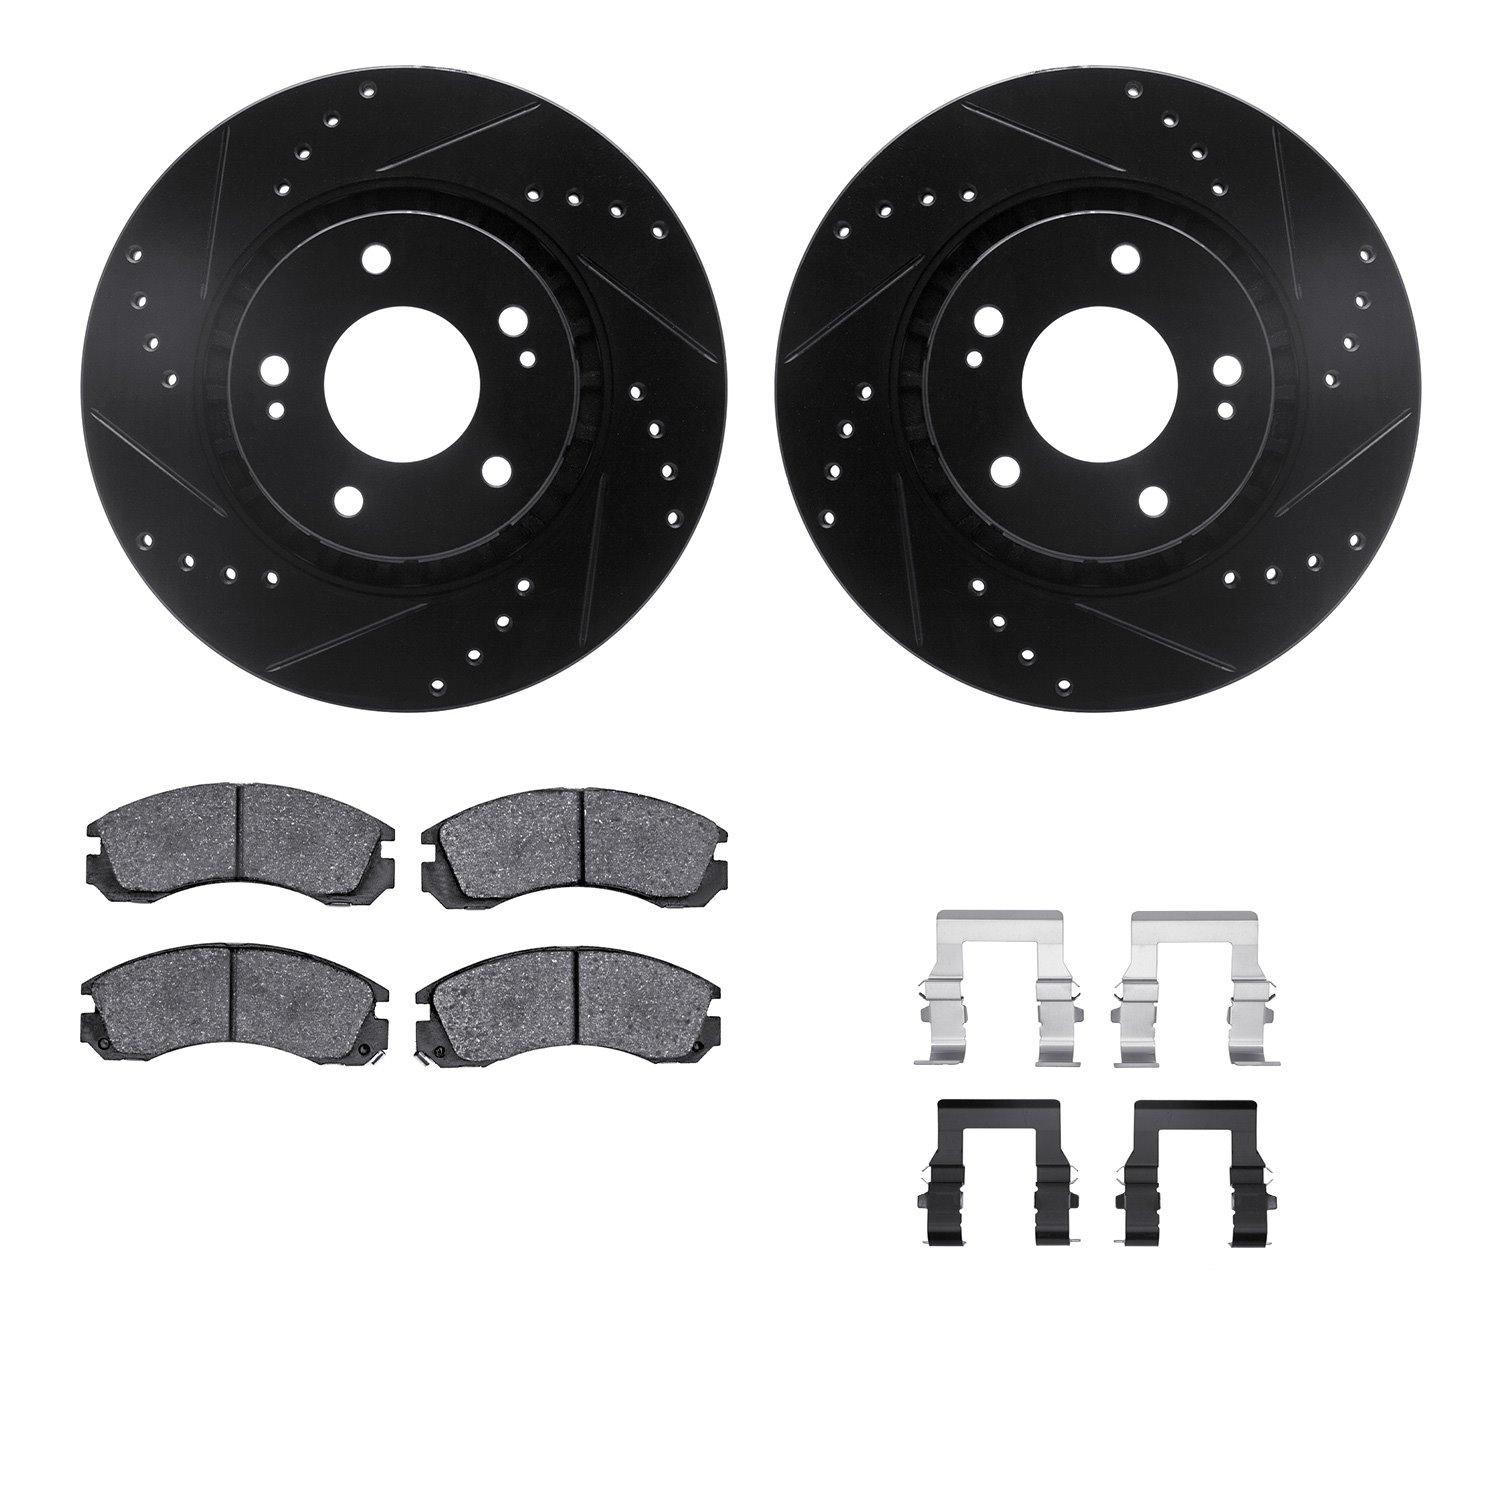 8312-72042 Drilled/Slotted Brake Rotors with 3000-Series Ceramic Brake Pads Kit & Hardware [Black], 2009-2015 Mitsubishi, Positi